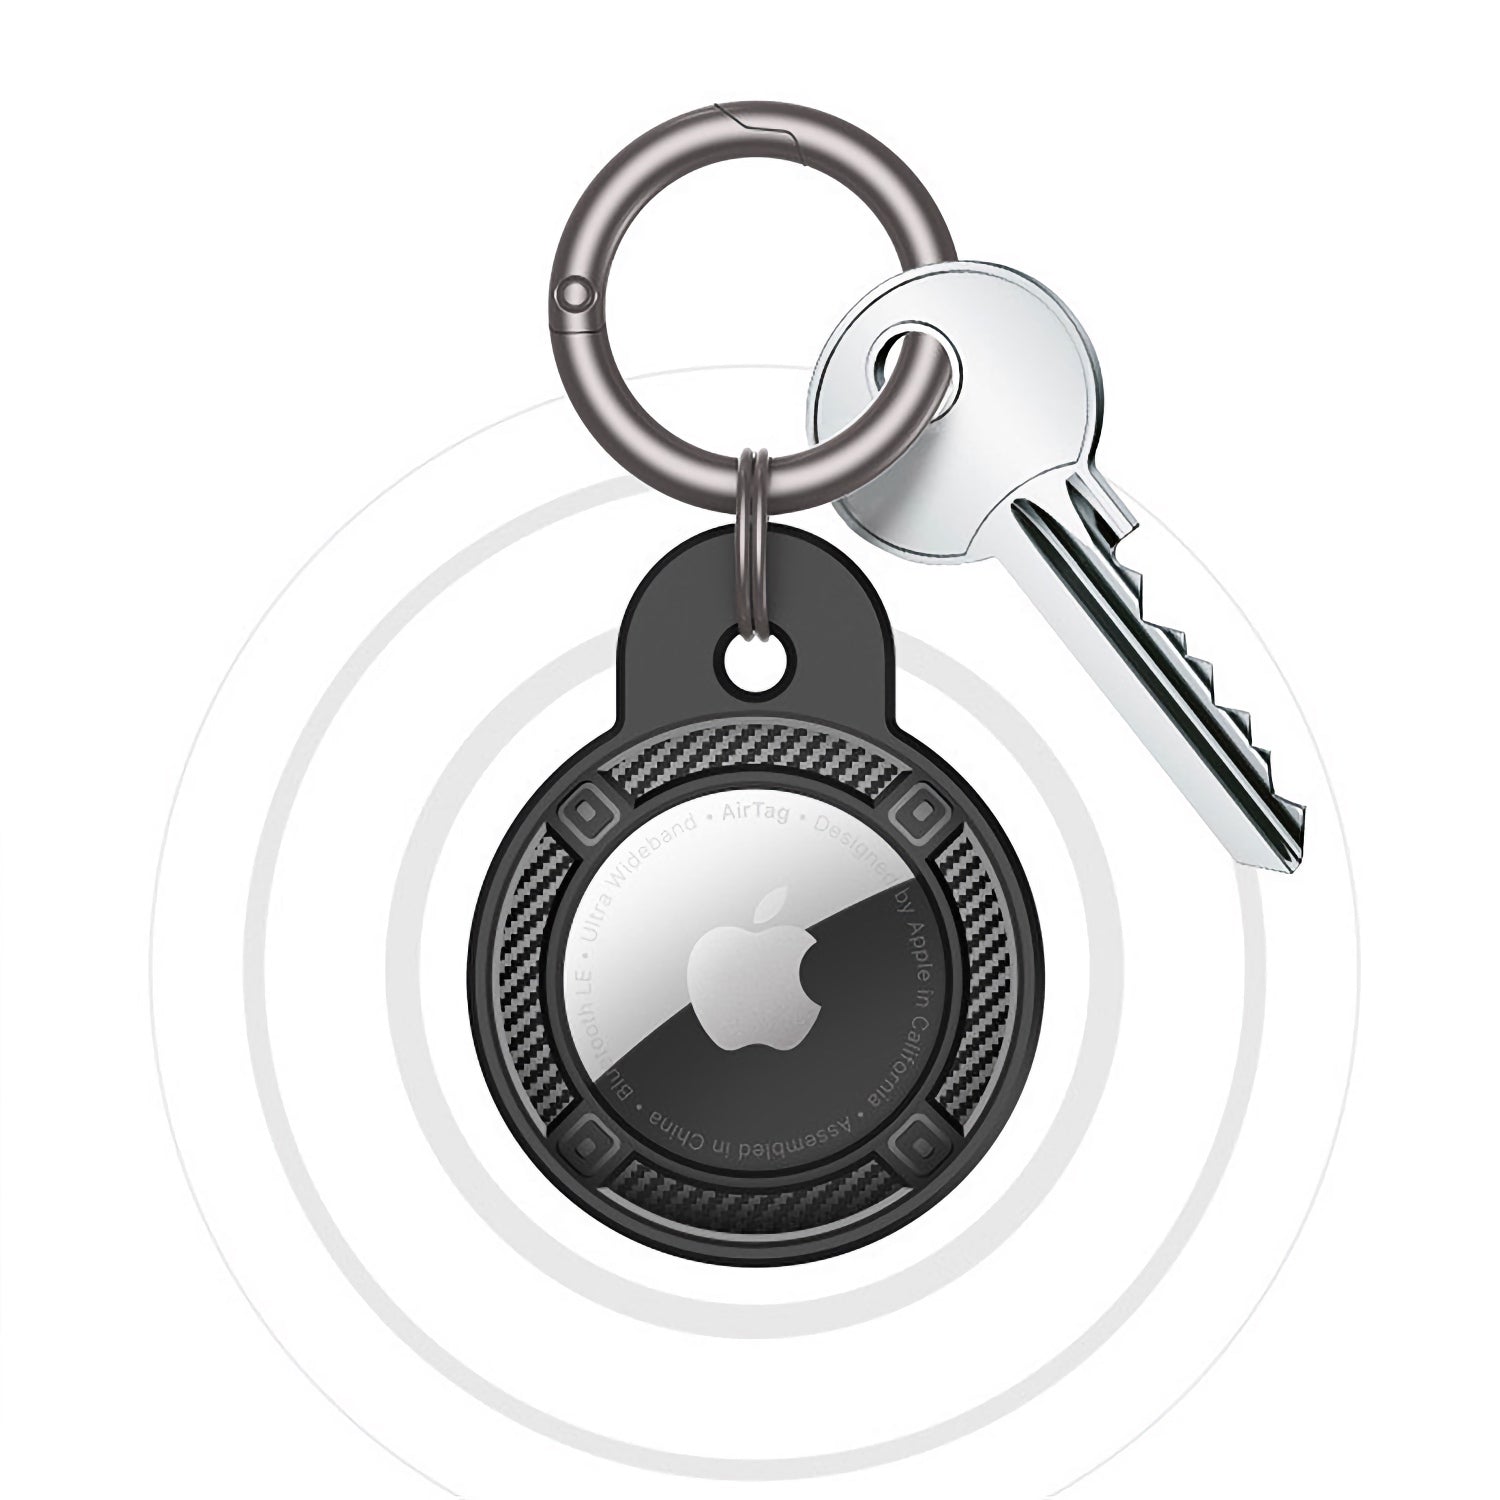 Handyh\u00fclle iPhone 6 Accessoires Schlüsselanhänger 